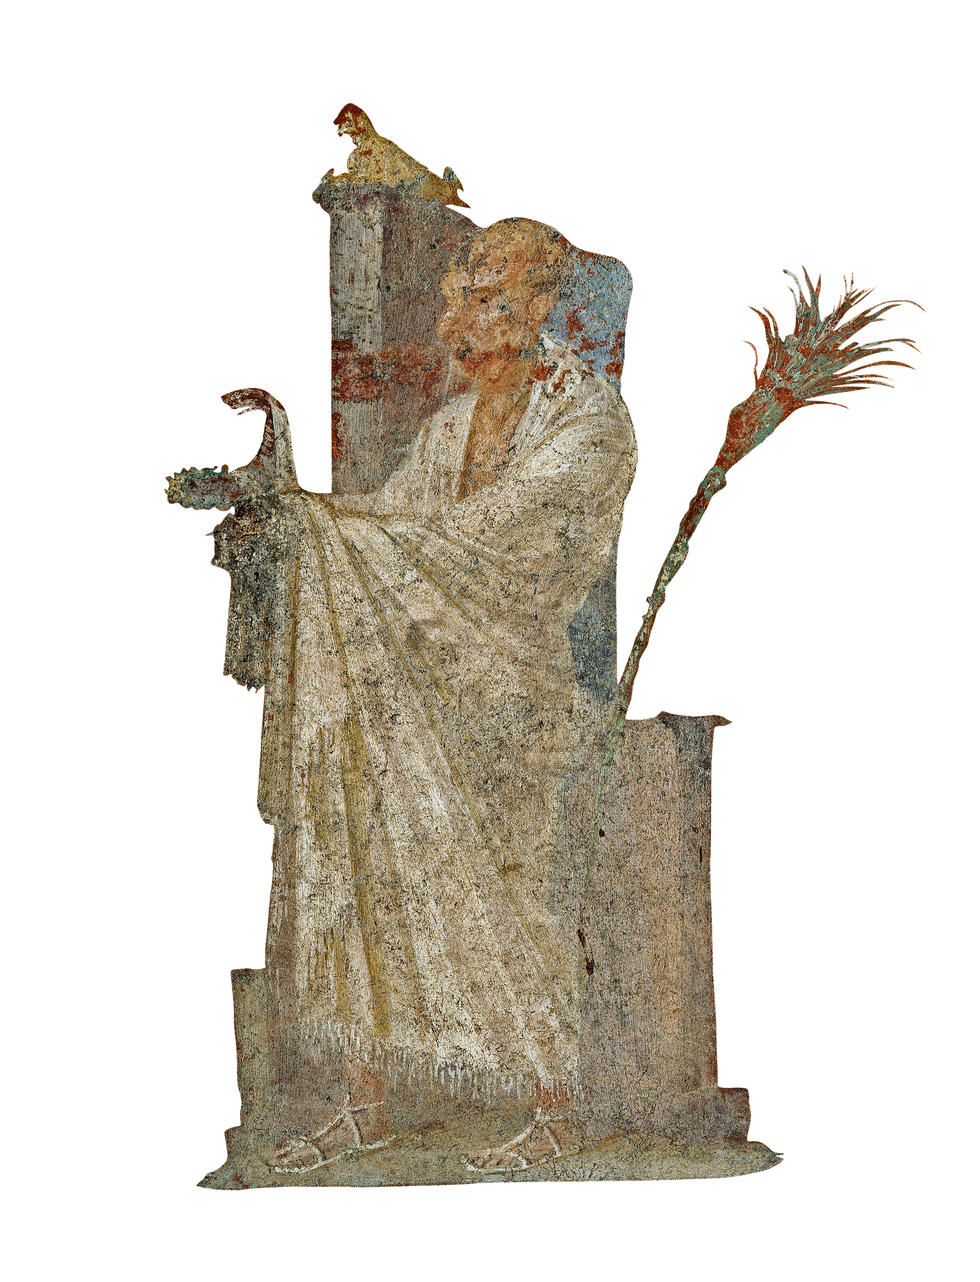 Isispriester De voorgangers in de eredienst van de godin moesten zich houden aan strikte eisen van rituele zuiverheid Fresco uit de tempel in Pompe